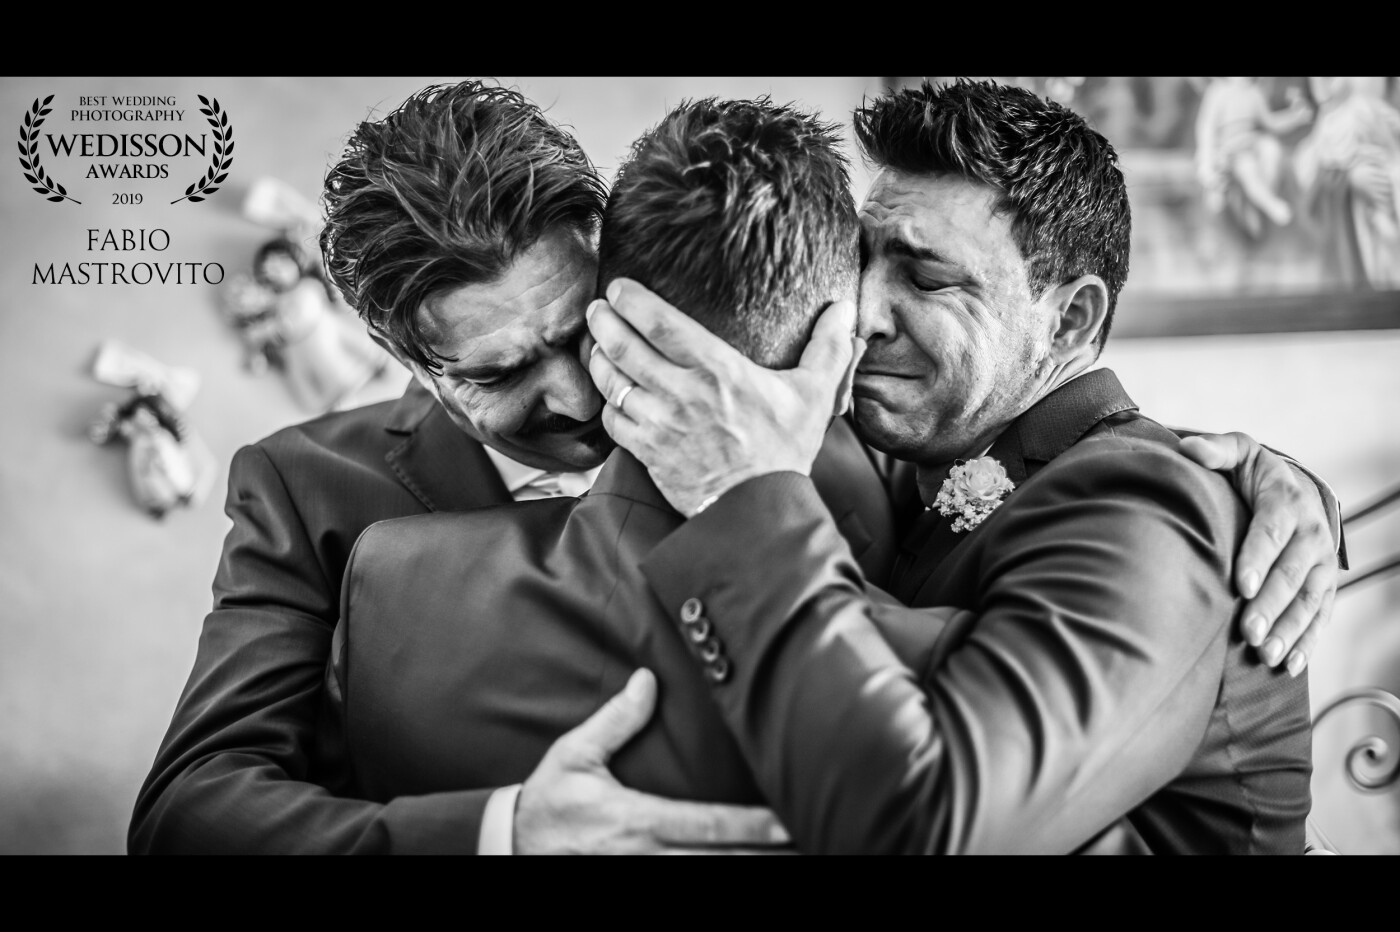 Evincere attraverso uno scatto l'emozione. Nella foto sono immortalati tre fratelli che scoppiano in un abbraccio. Un momento unico ed irripetibile.